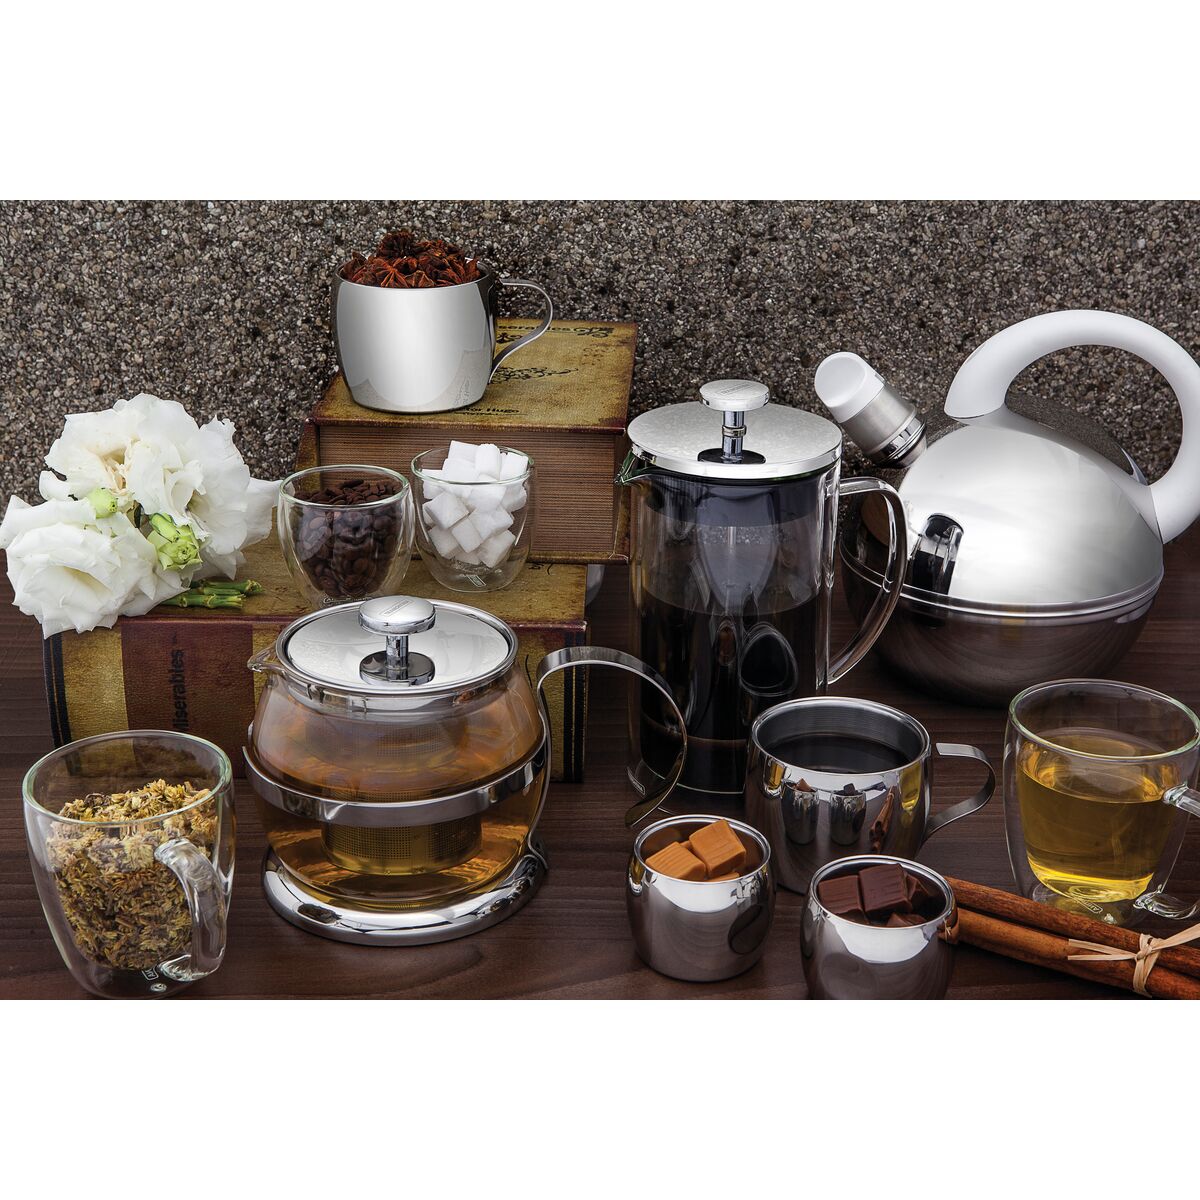 Kit para Chá e Café Tramontina em Aço Inox 5 Peças de Qualidade em